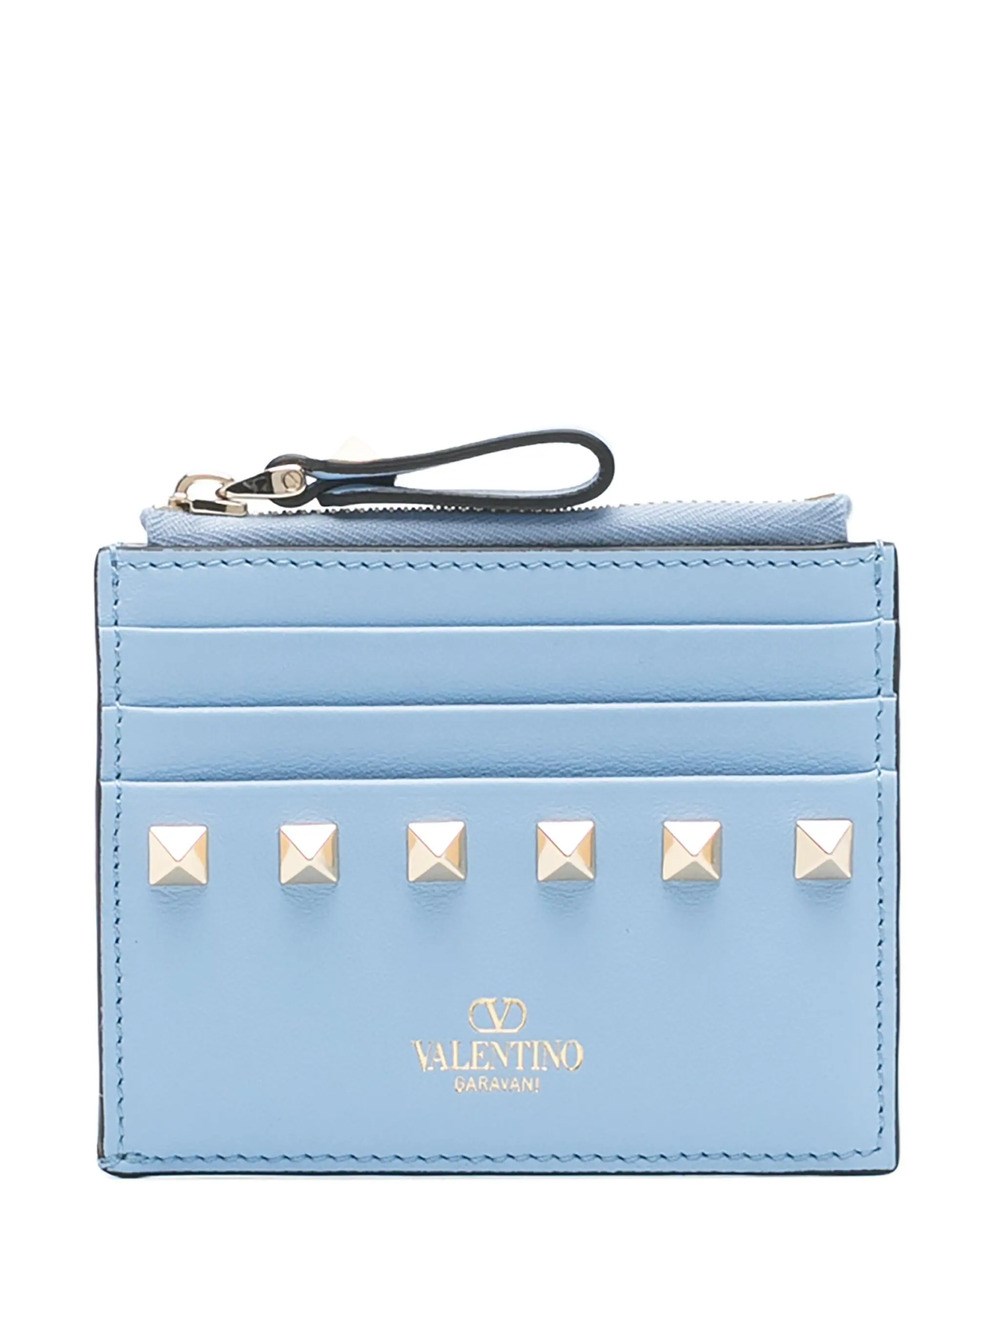 Valentino Garavani Rockstud-embellished Leather Wallet In Blue